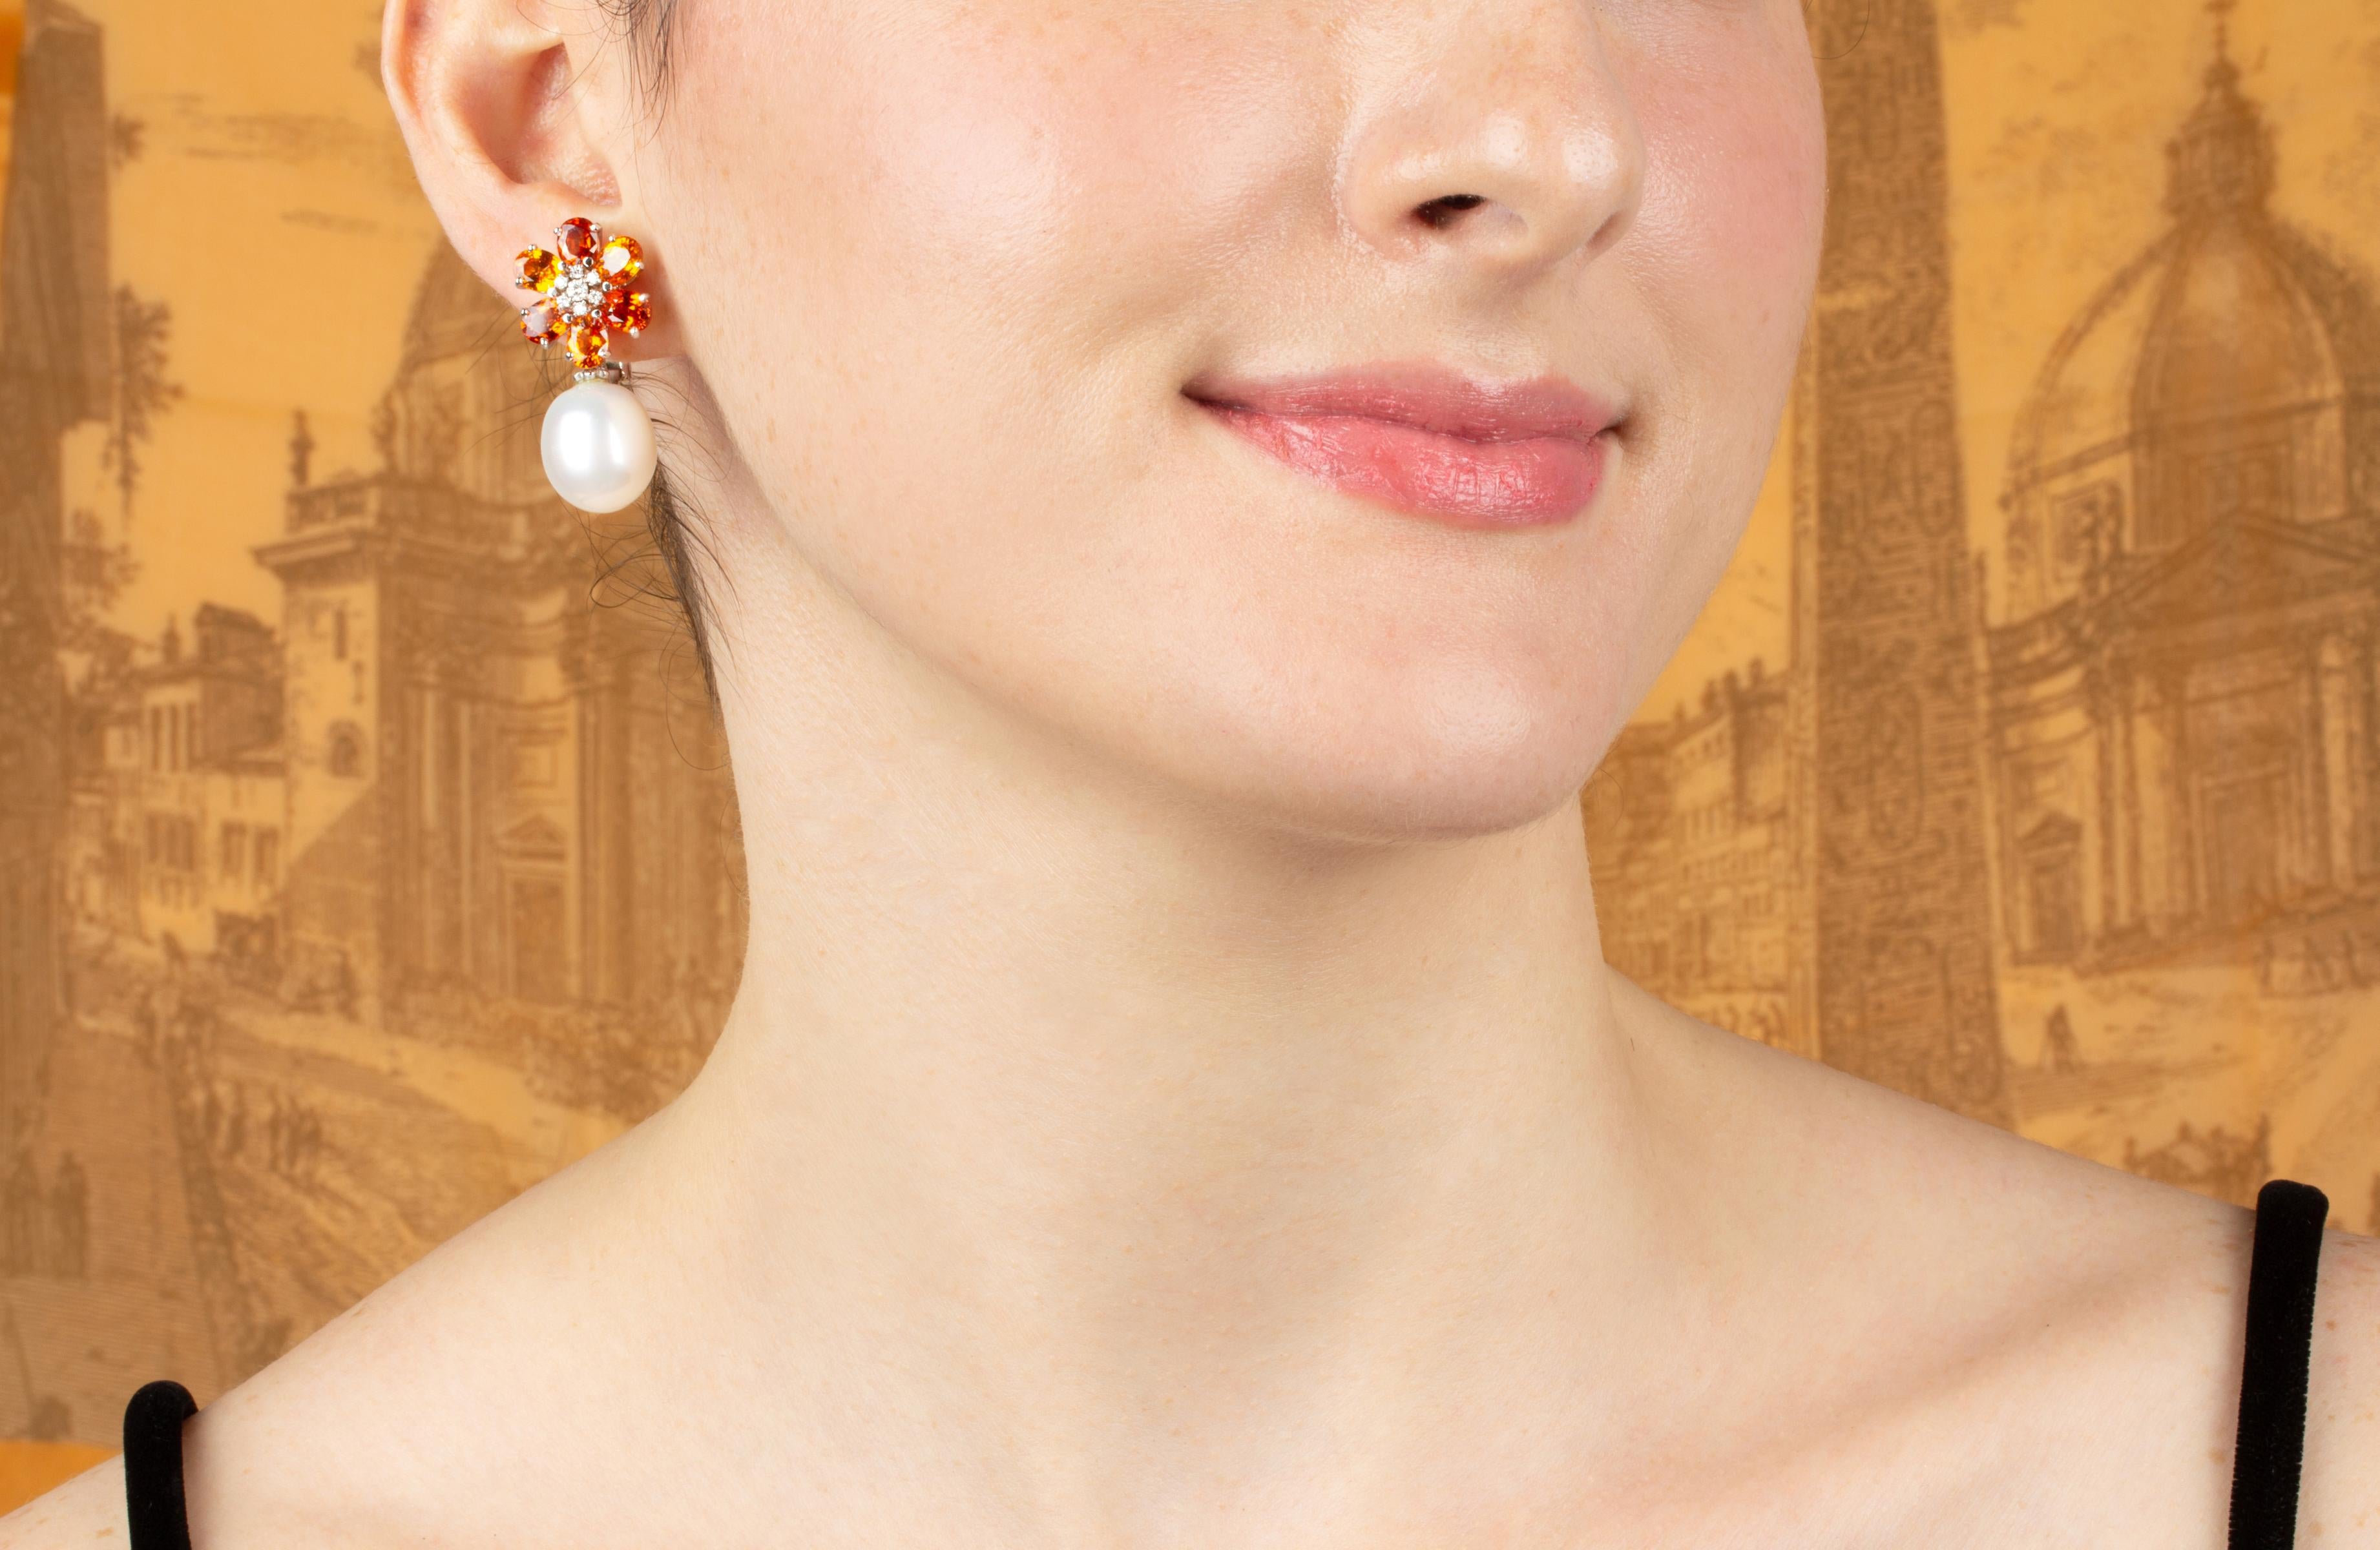 Die Saphir- und Perlenohrringe zeigen ein Blumenmuster am Ohr mit 8,40 Karat orangefarbenen Saphiren im Ovalschliff. An den Spitzen hängen 2 Südseeperlen von 15 mm Durchmesser. 0.35 Karat runde Diamanten vervollständigen das Design.
Alle unsere